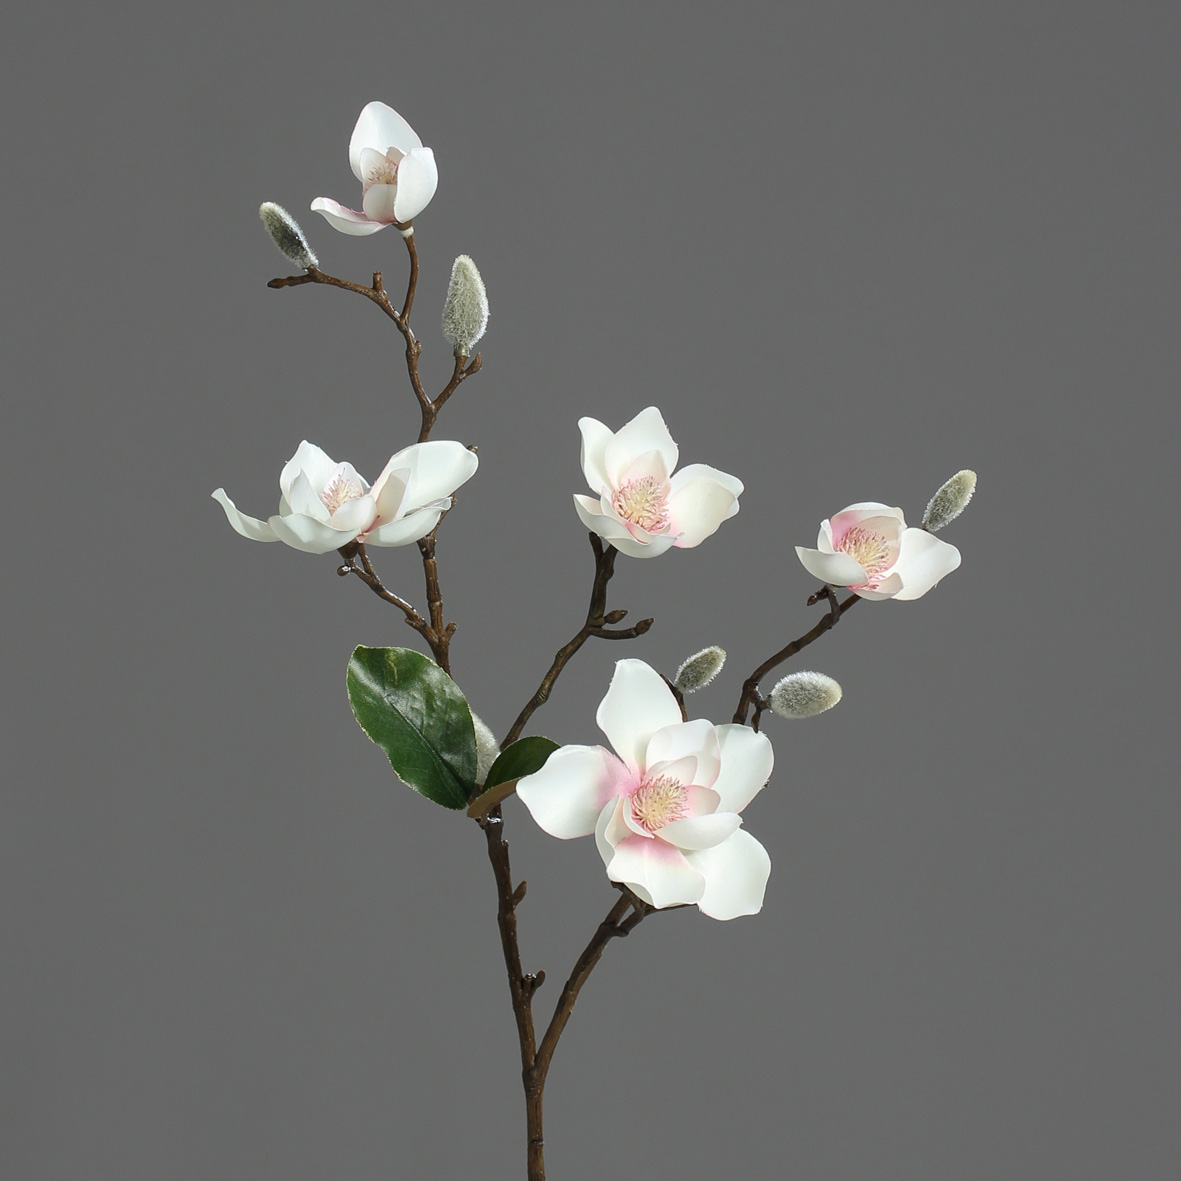 DPI GMBH - BRÜHL Magnolie mit 5 Blüten pink-cream 64cm 